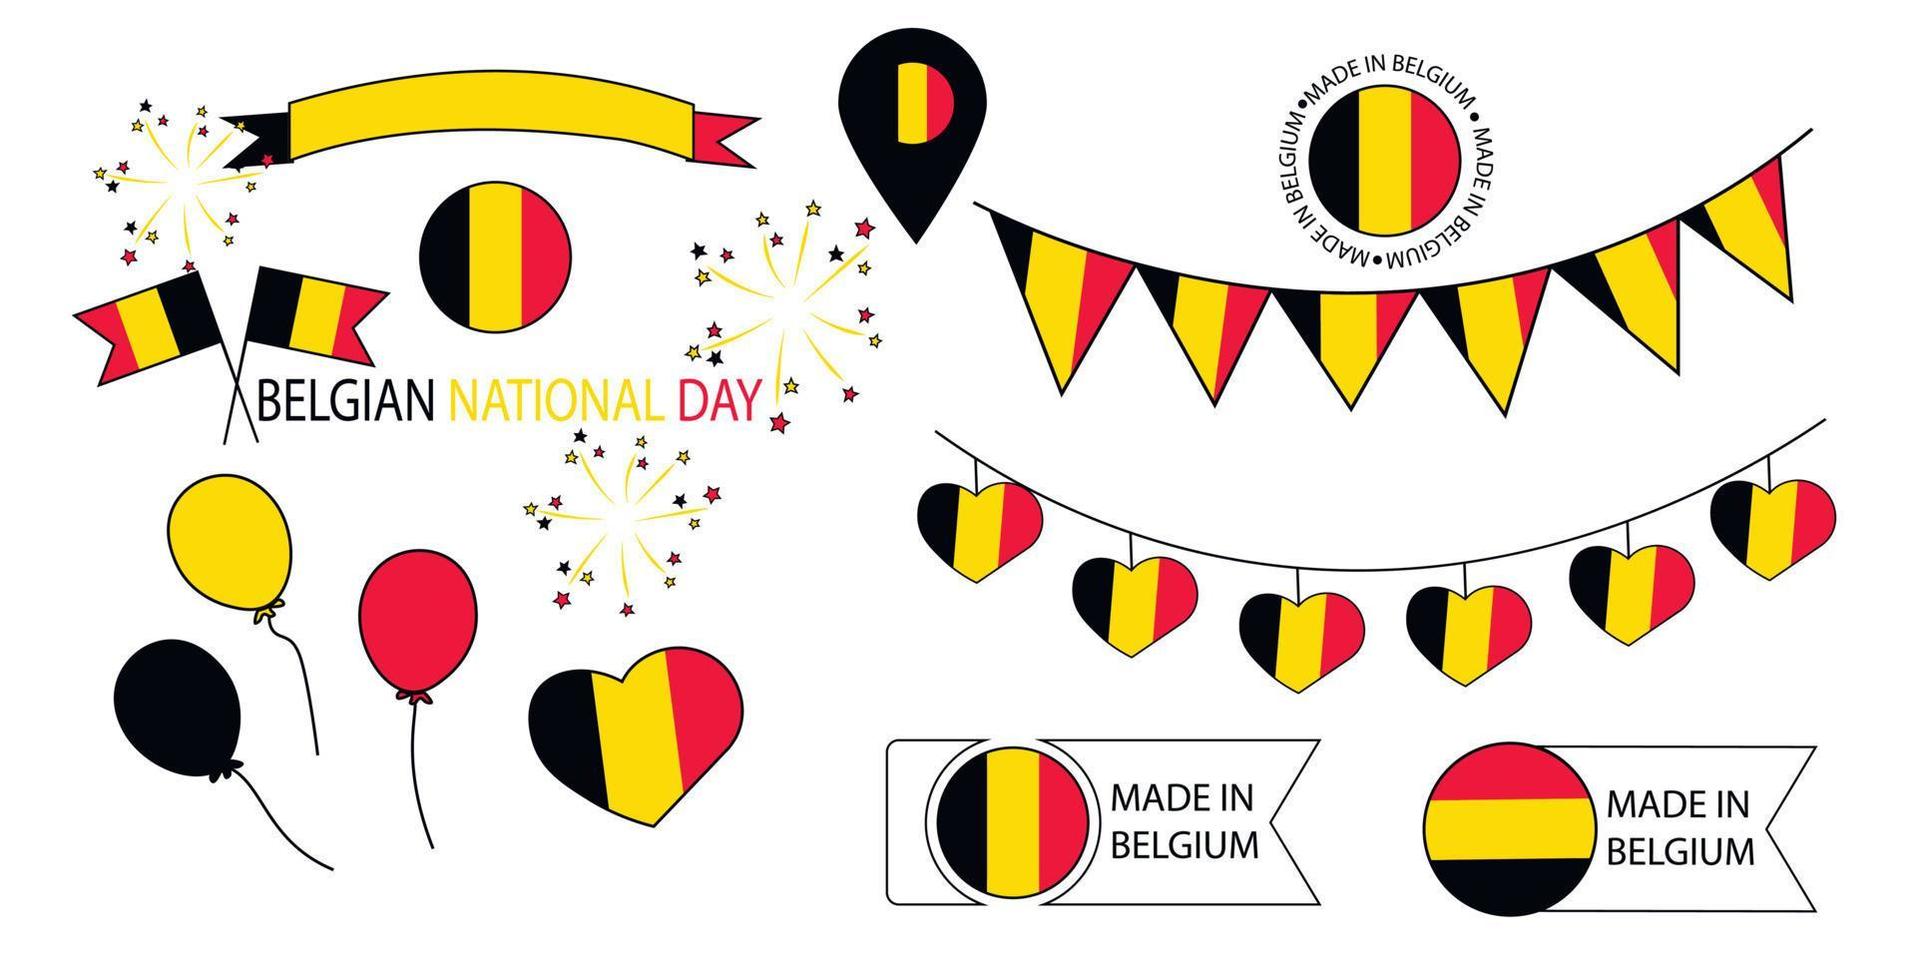 onafhankelijkheidsdag van belgië vector stock illustratie. 21 juli. elementen voor ontwerp. vlaggen, slingers, vuurwerk, vuurwerk, ballon. geïsoleerd op een witte achtergrond.